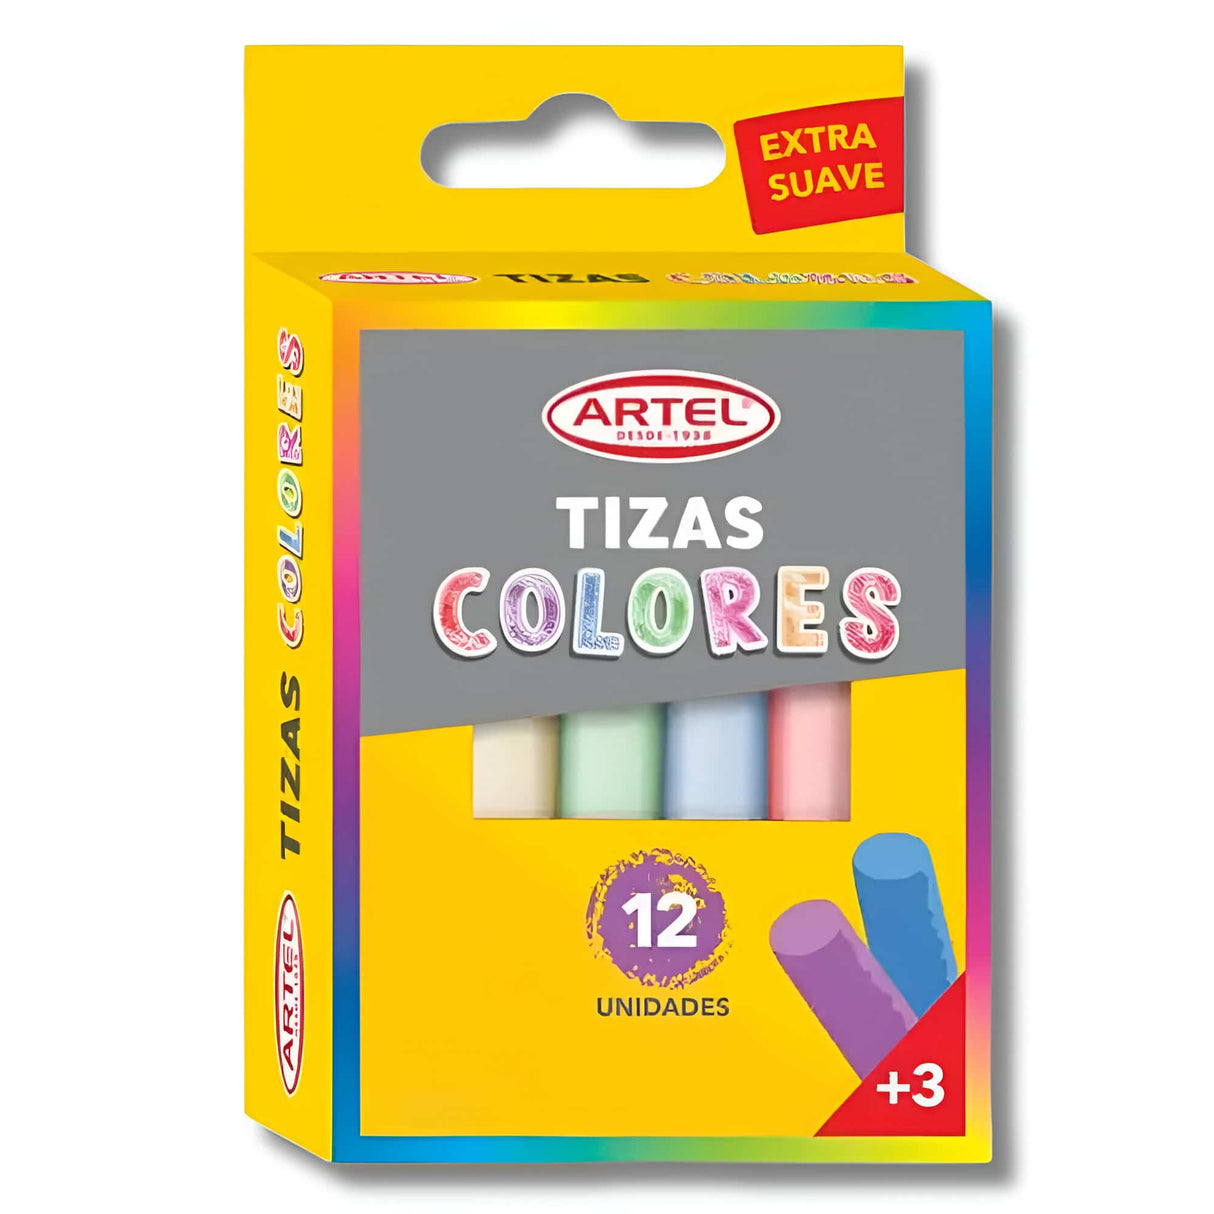 Artel - Pack 12 Tizas de Colores